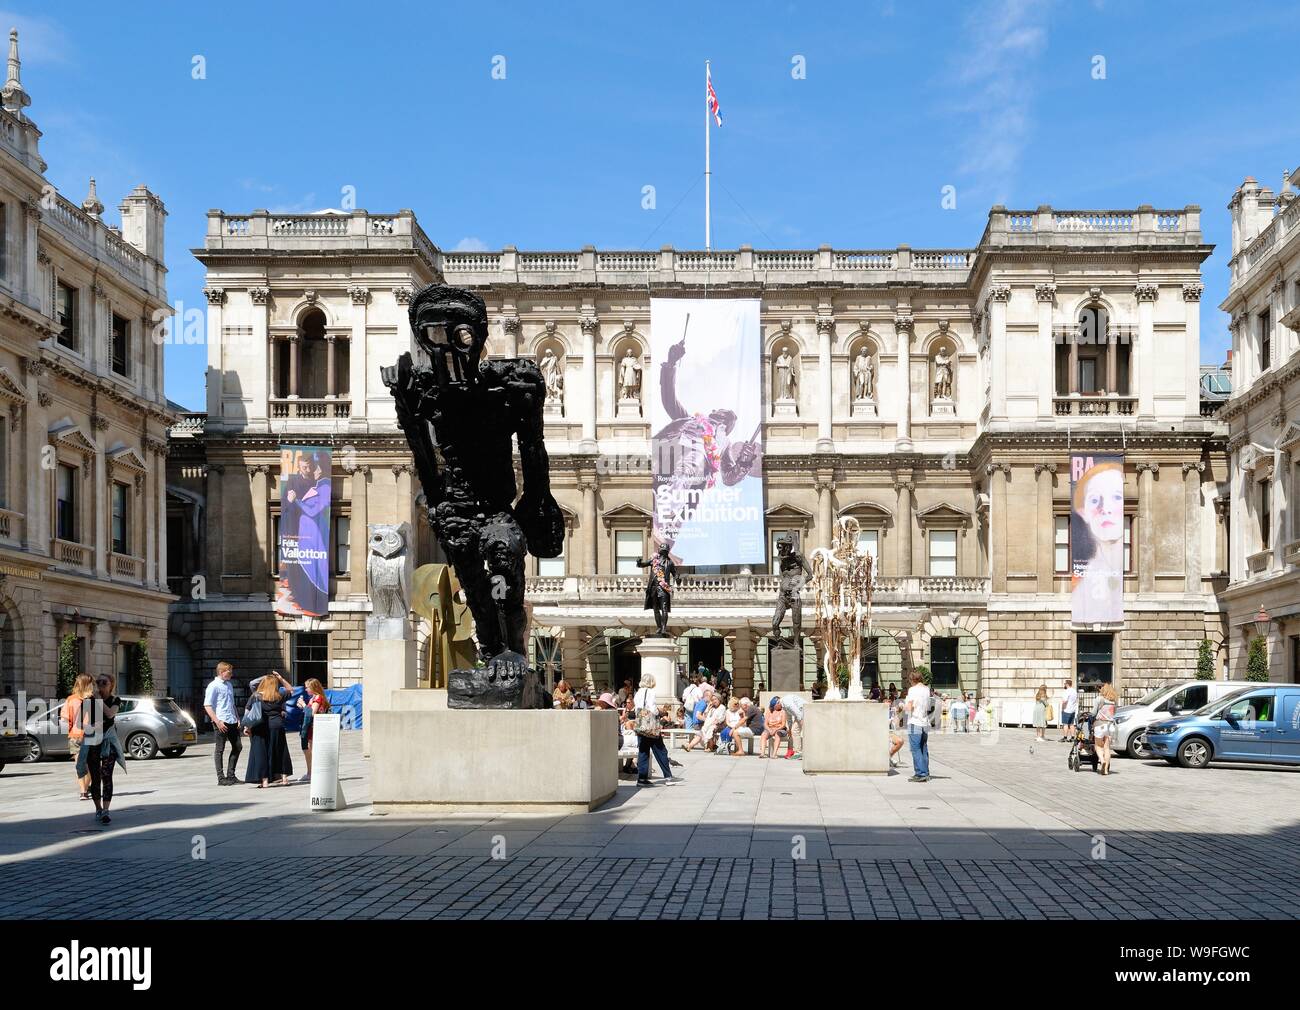 El exterior de la Real Academia de Bellas Artes de exposición durante el verano de 2019, Londres, Reino Unido Foto de stock